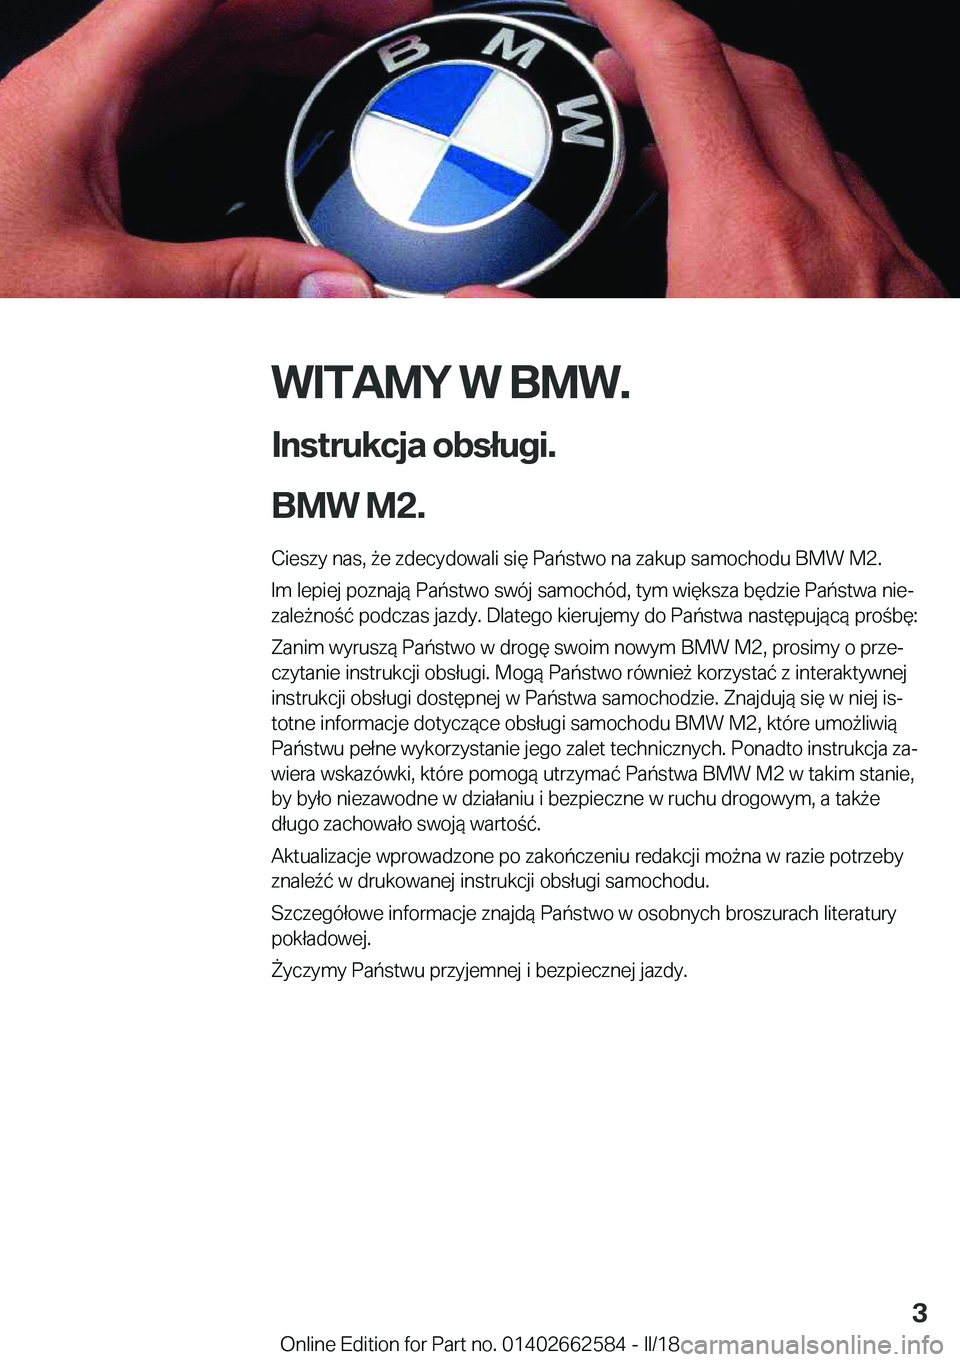 BMW M2 2018  Instrukcja obsługi (in Polish) �W�I�T�A�M�Y��W��B�M�W�.
�I�n�s�t�r�u�k�c�j�a��o�b�s�ł�u�g�i�.
�B�M�W��M�2�.� �C�i�e�s�z�y� �n�a�s�,�  9�e� �z�d�e�c�y�d�o�w�a�l�i� �s�i�